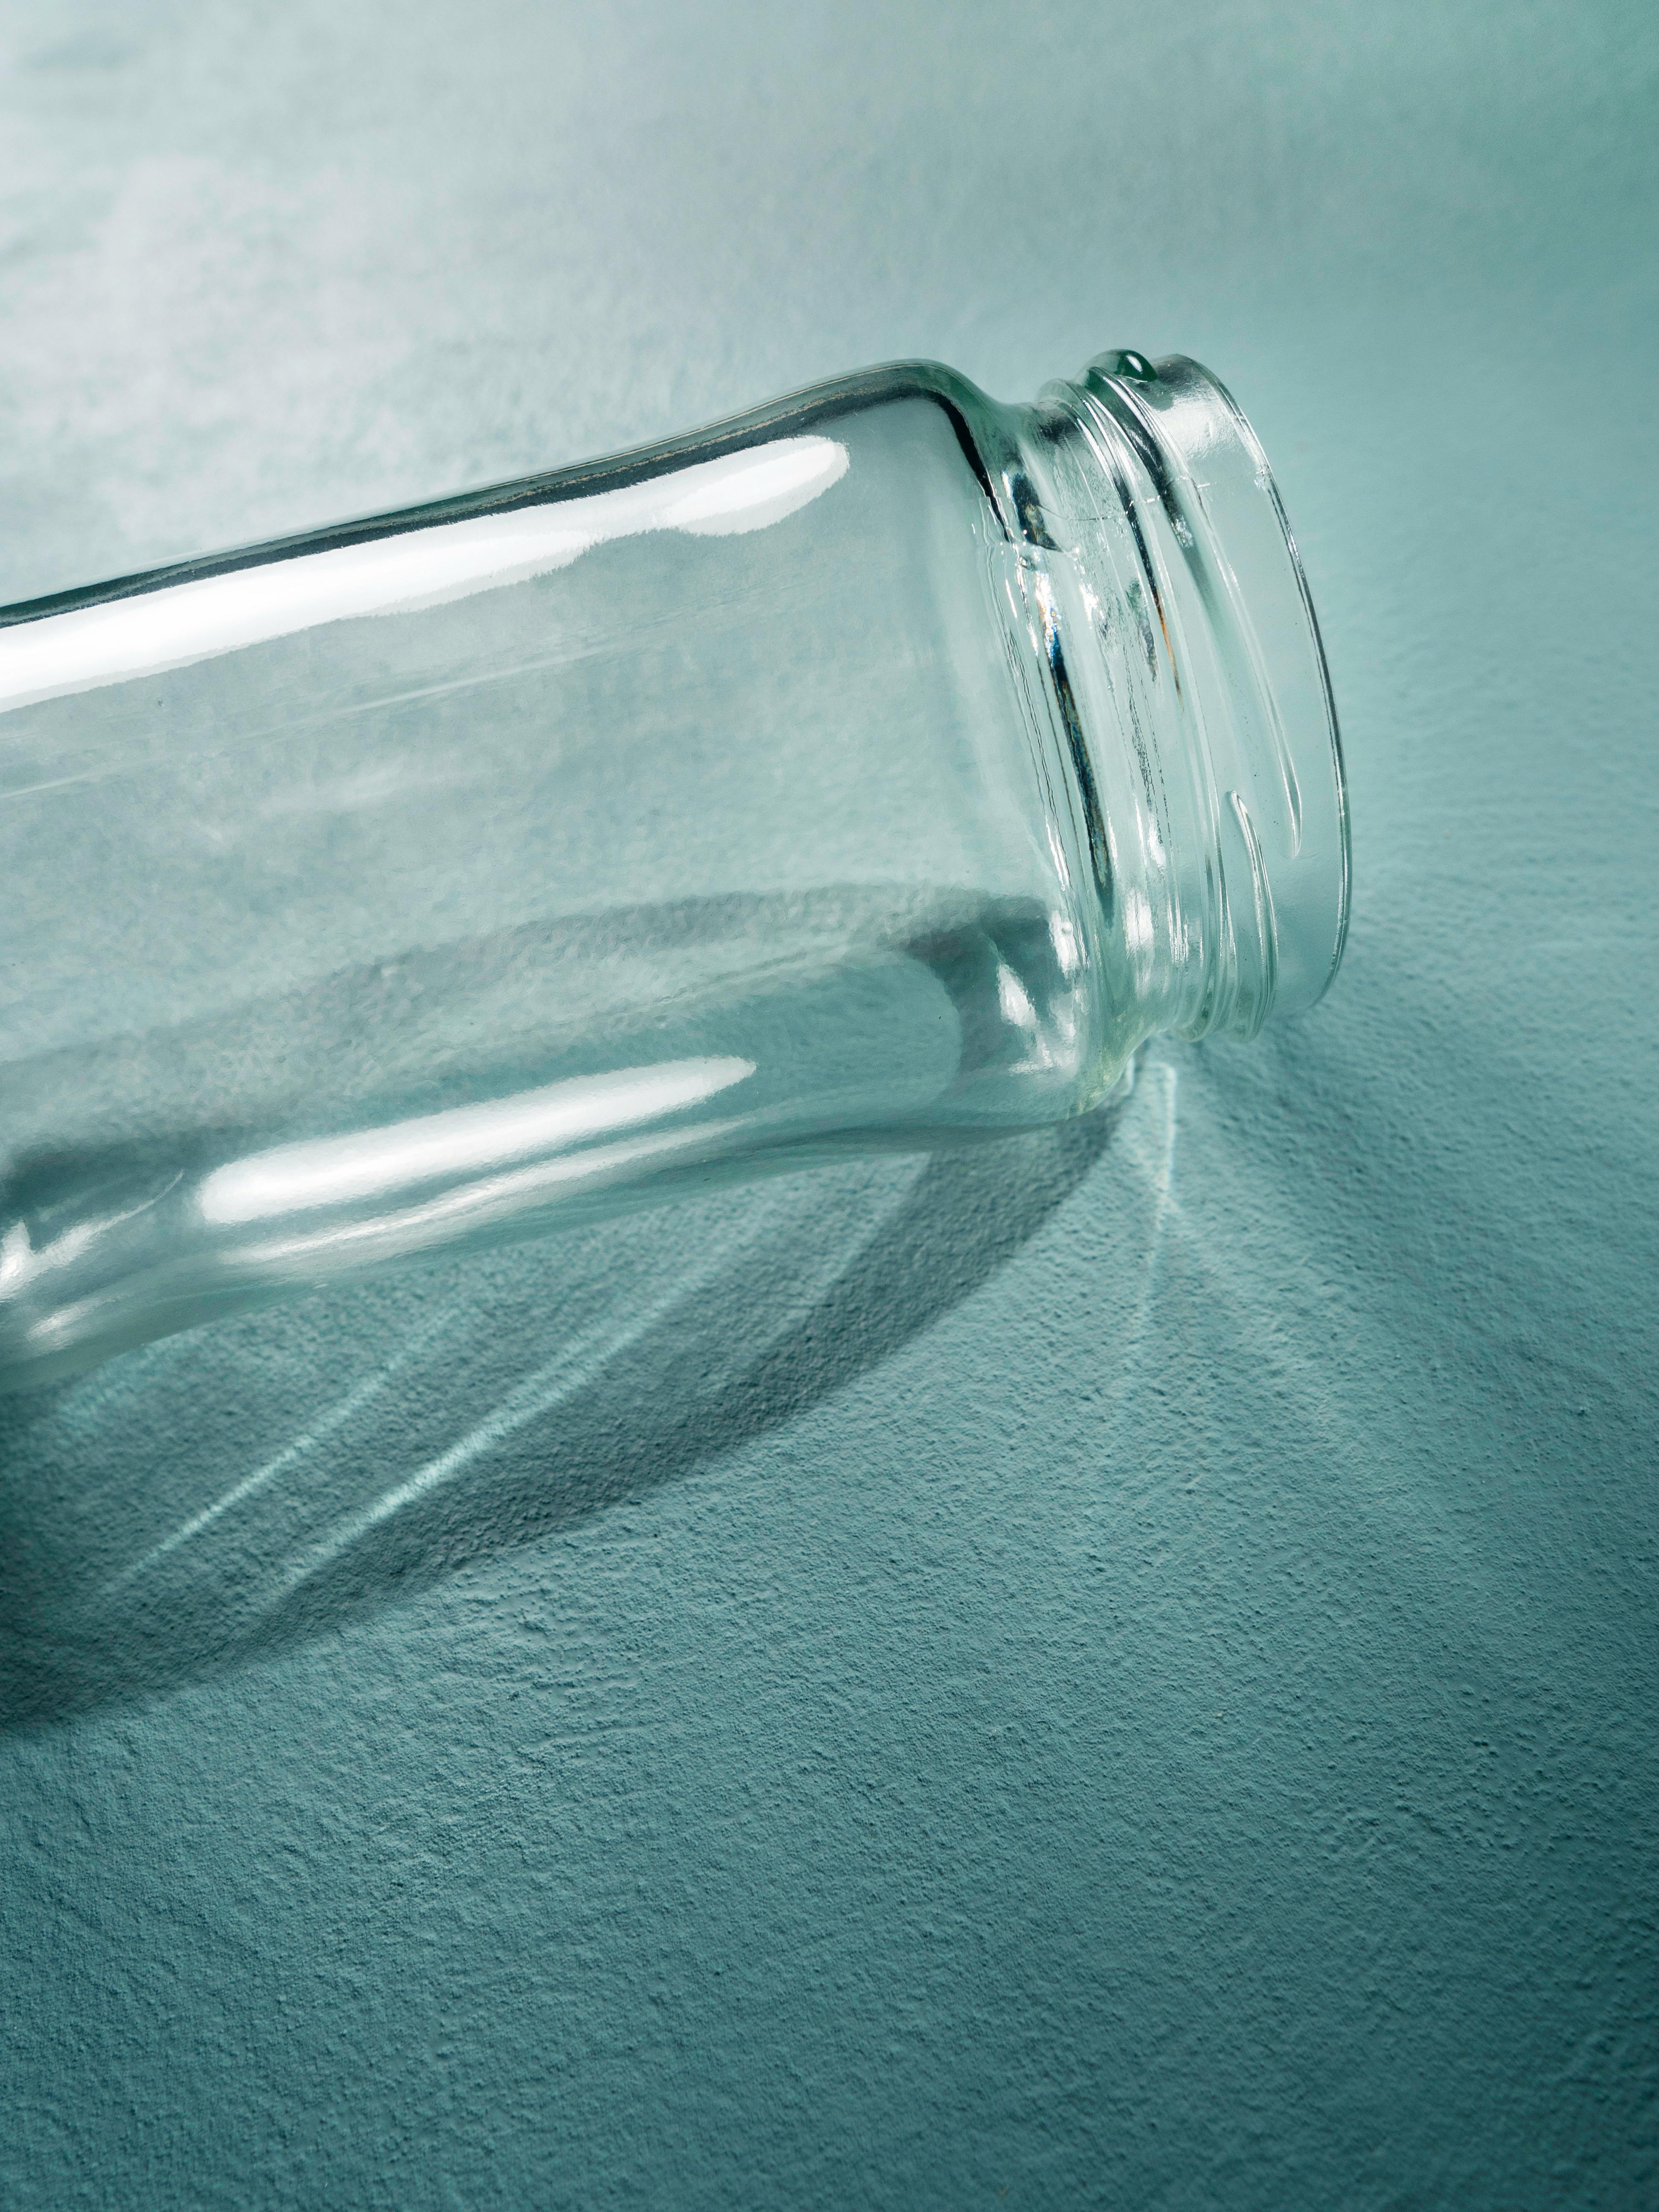 empty glass bottle on side